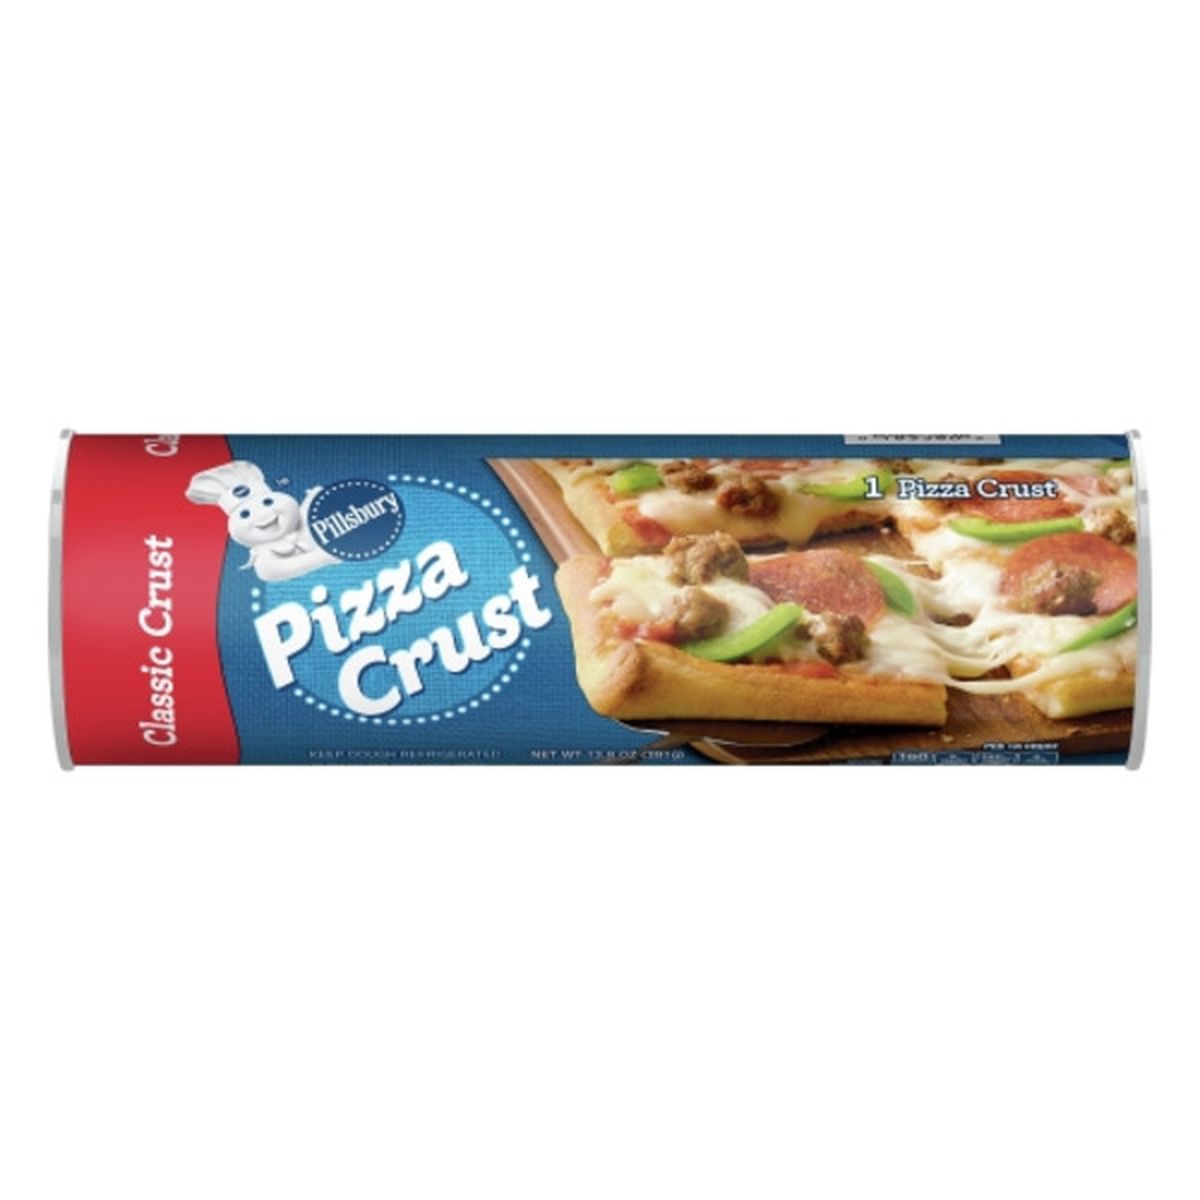 Calories in Pillsbury Pizza Crust, Classic